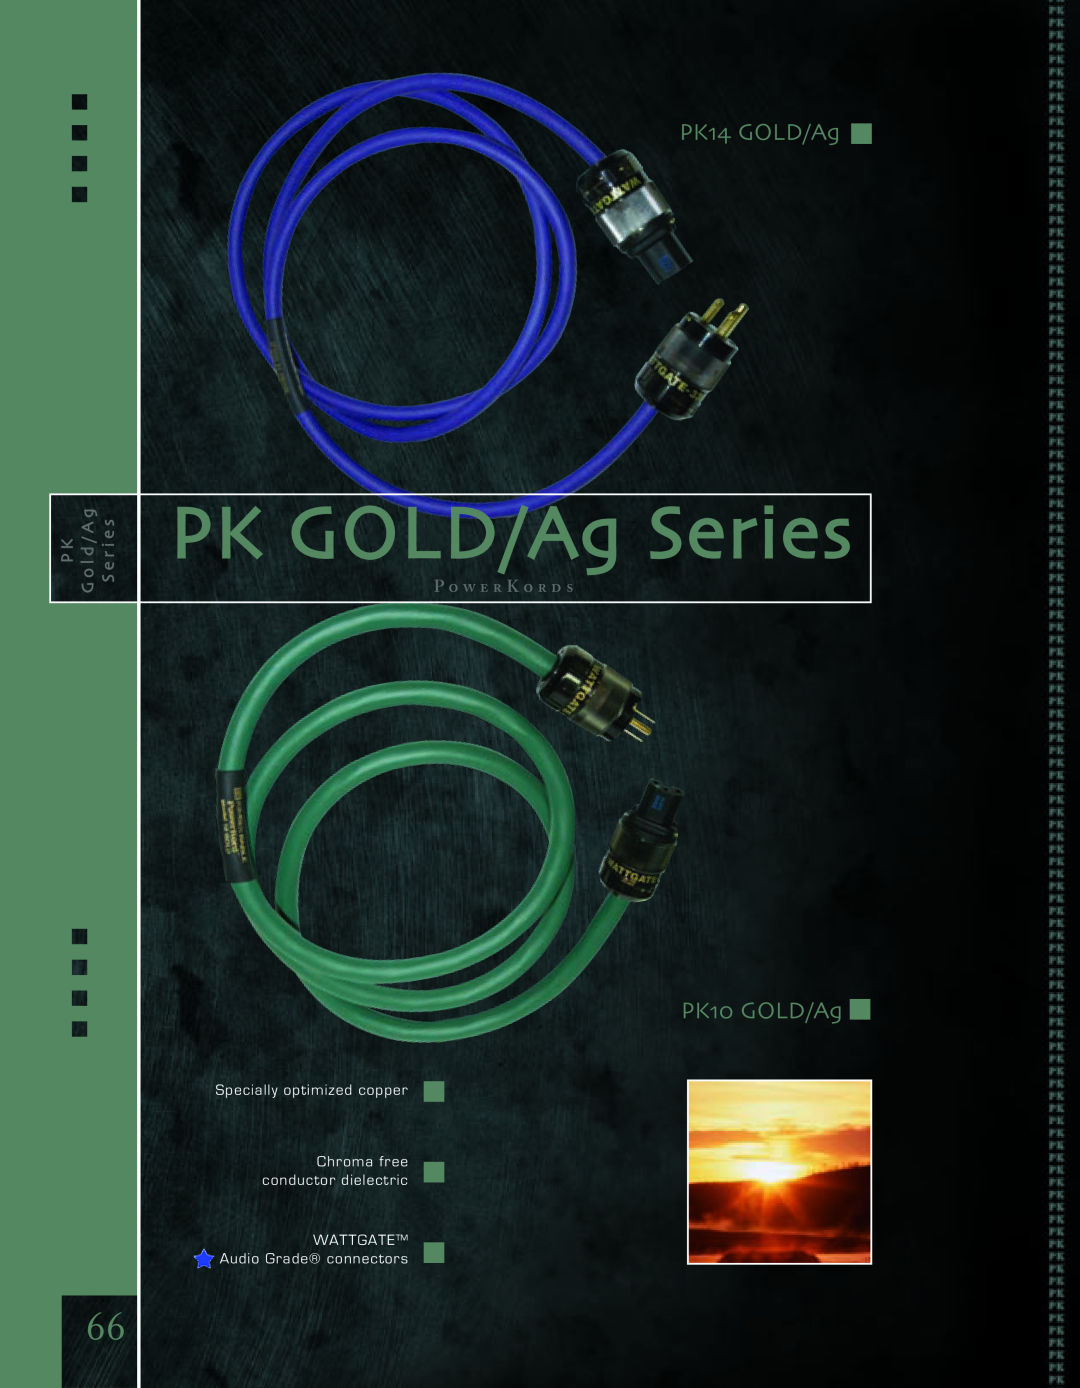 Kimber Kable PowerKordsTM PK GOLD/Ag Series, PK14 GOLD/Ag, PK10 GOLD/Ag, G o lPdK/ A g S e r i e s, P o w e r K o r d s 